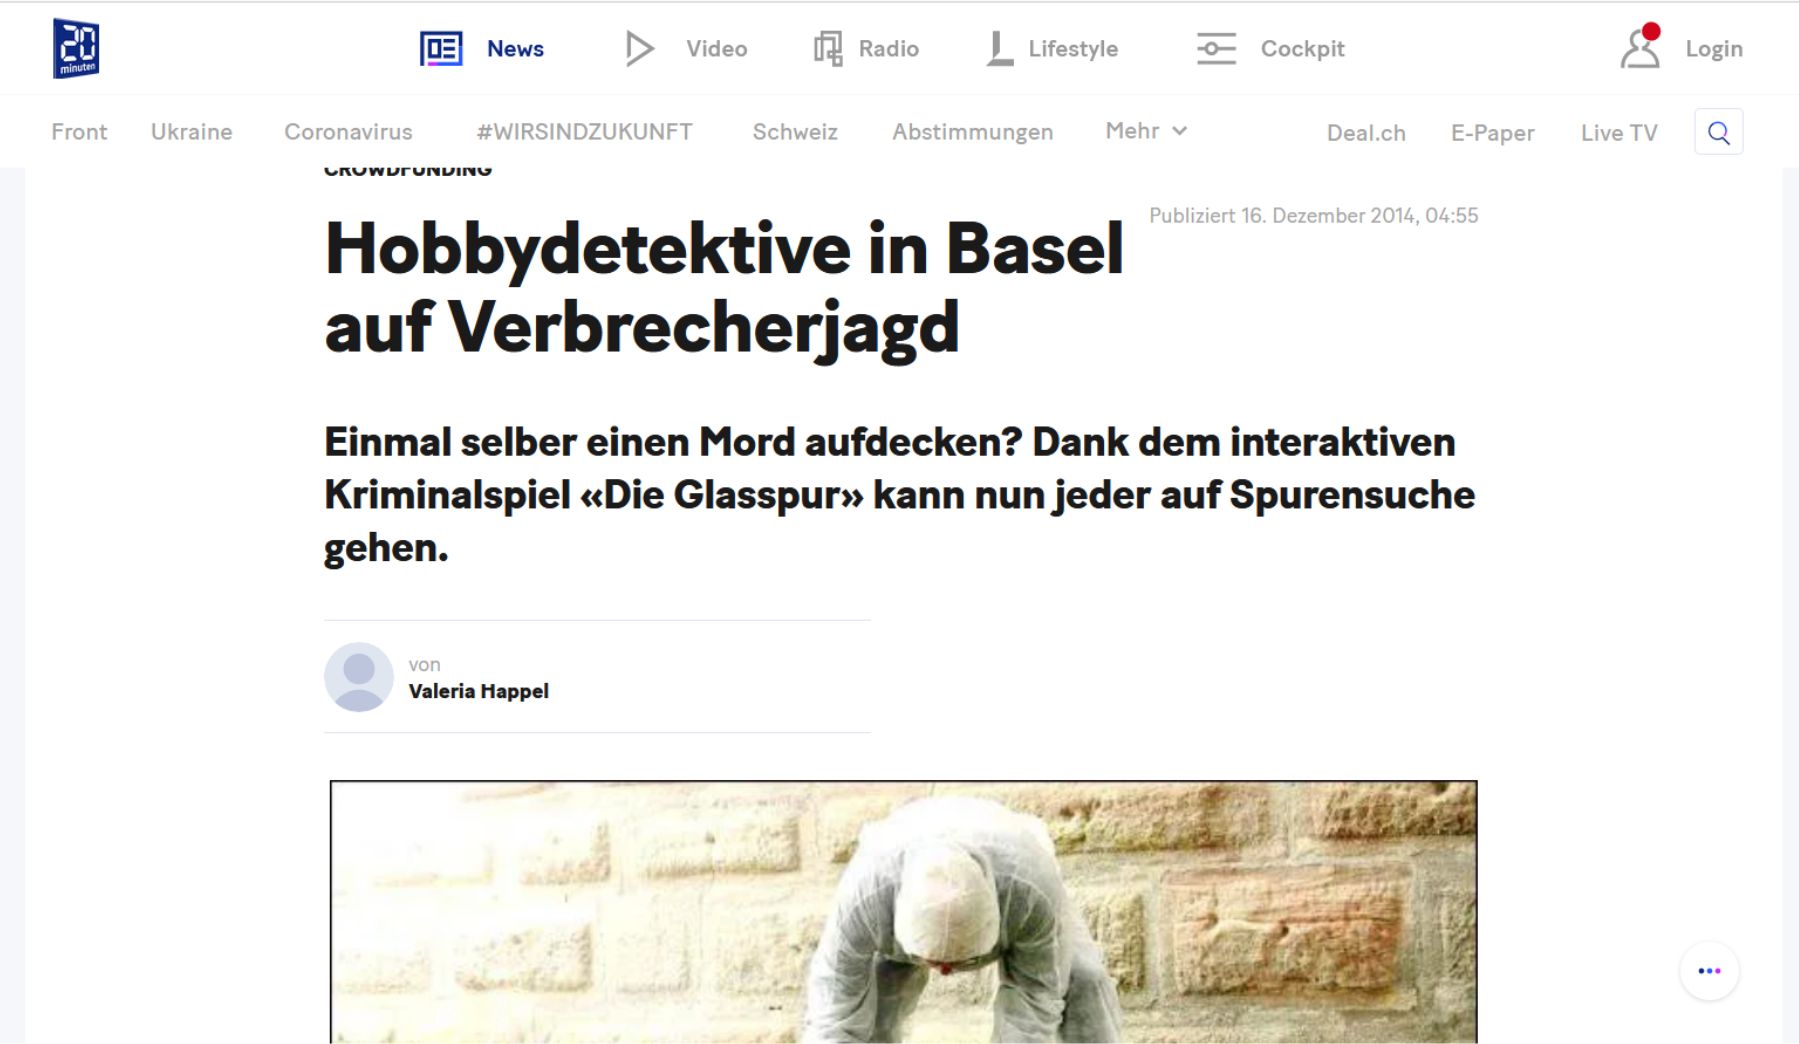 Bild des Zeitungsartikel 'Hobbydetektive in Basel auf Verbrecherjagd'